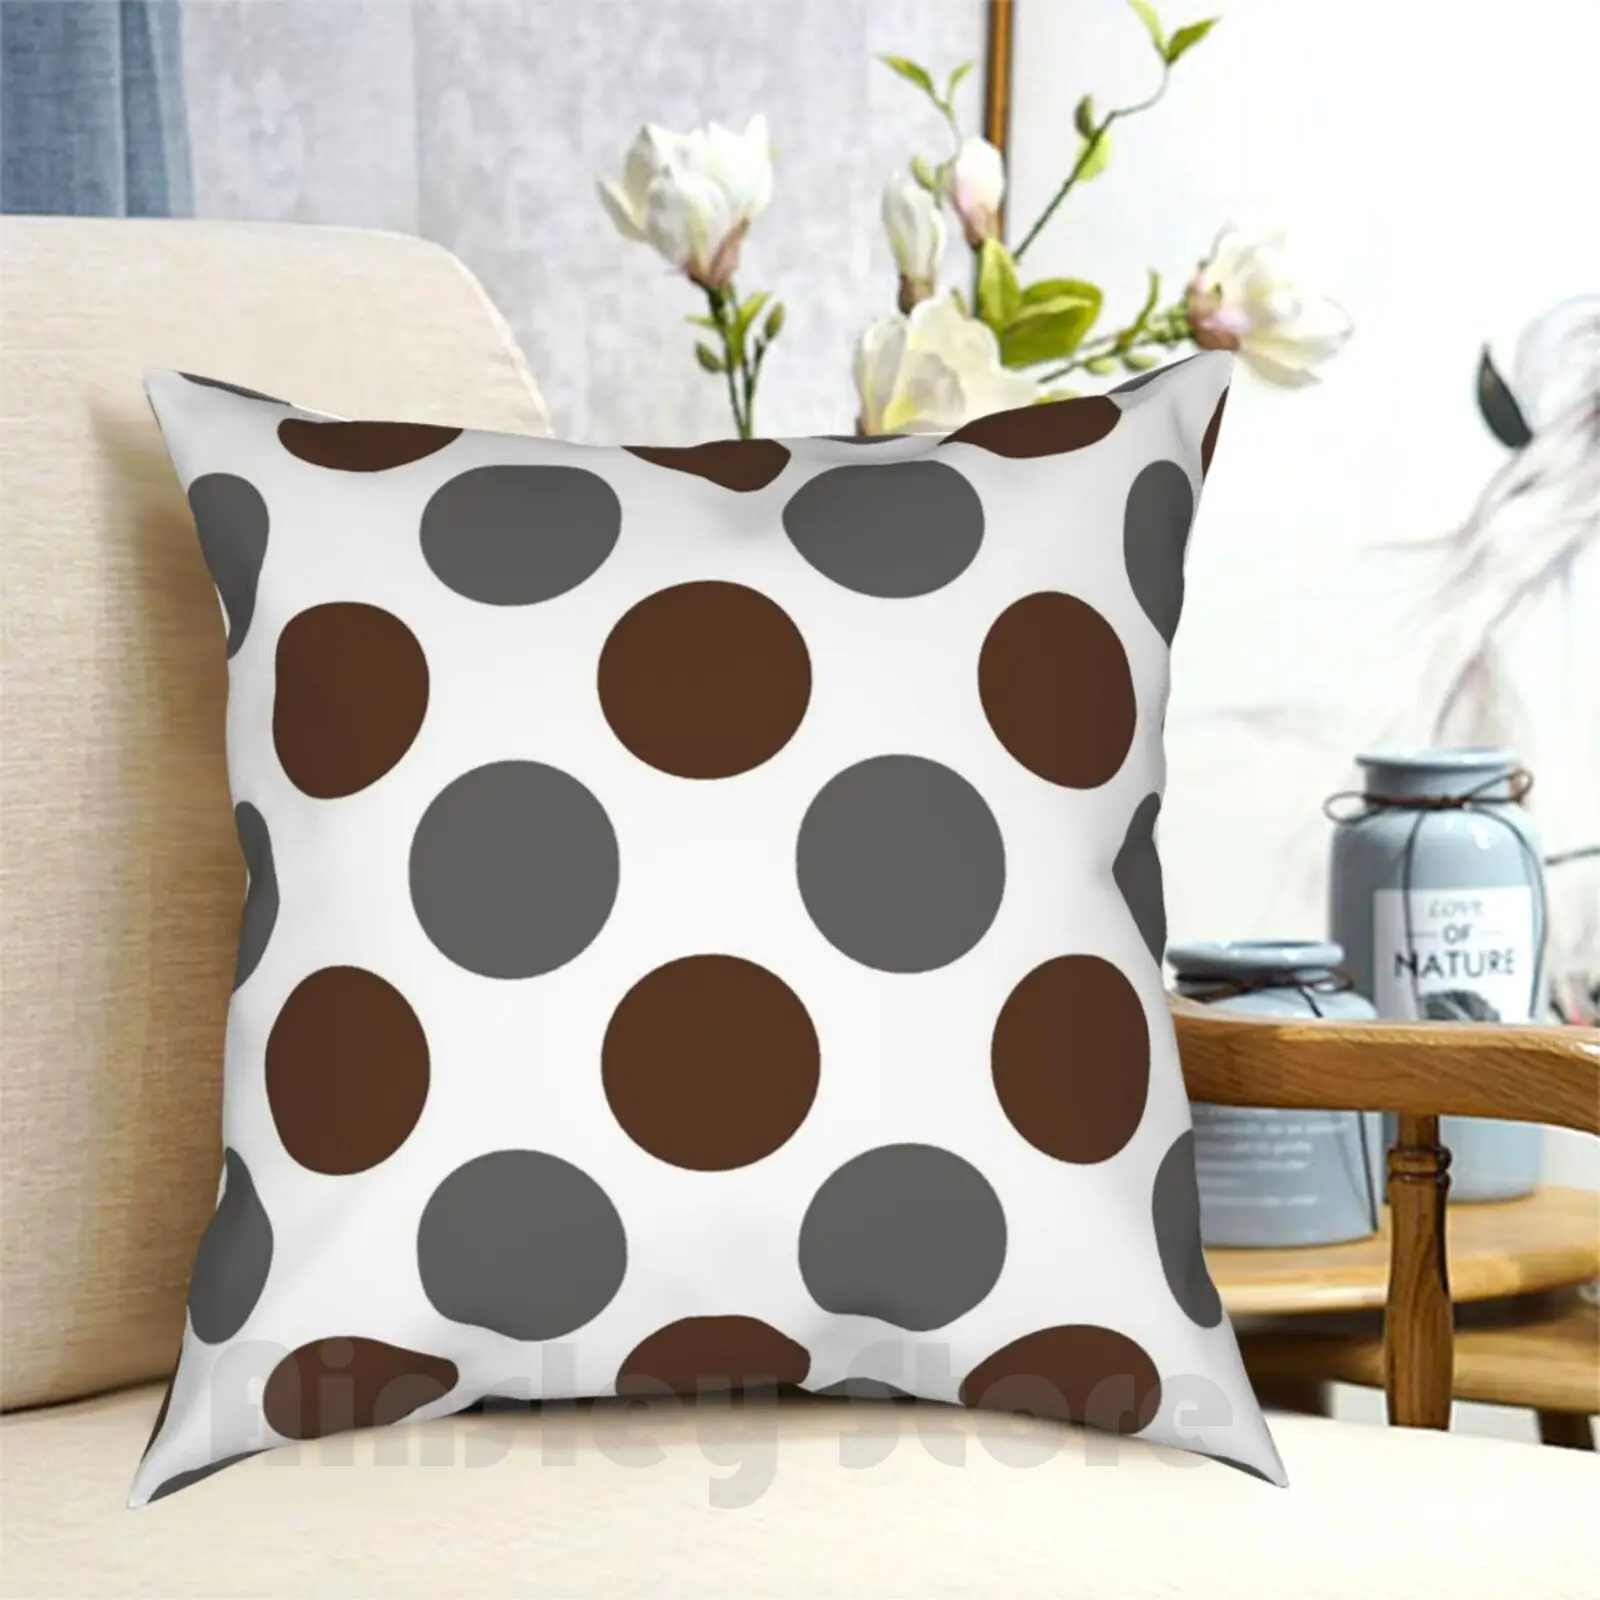 

Grey-Brown Polka Dots Large On White Pillow Case Printed Home Soft Throw Pillow Polka Dot Polkadot Polka Dots Dots Spots